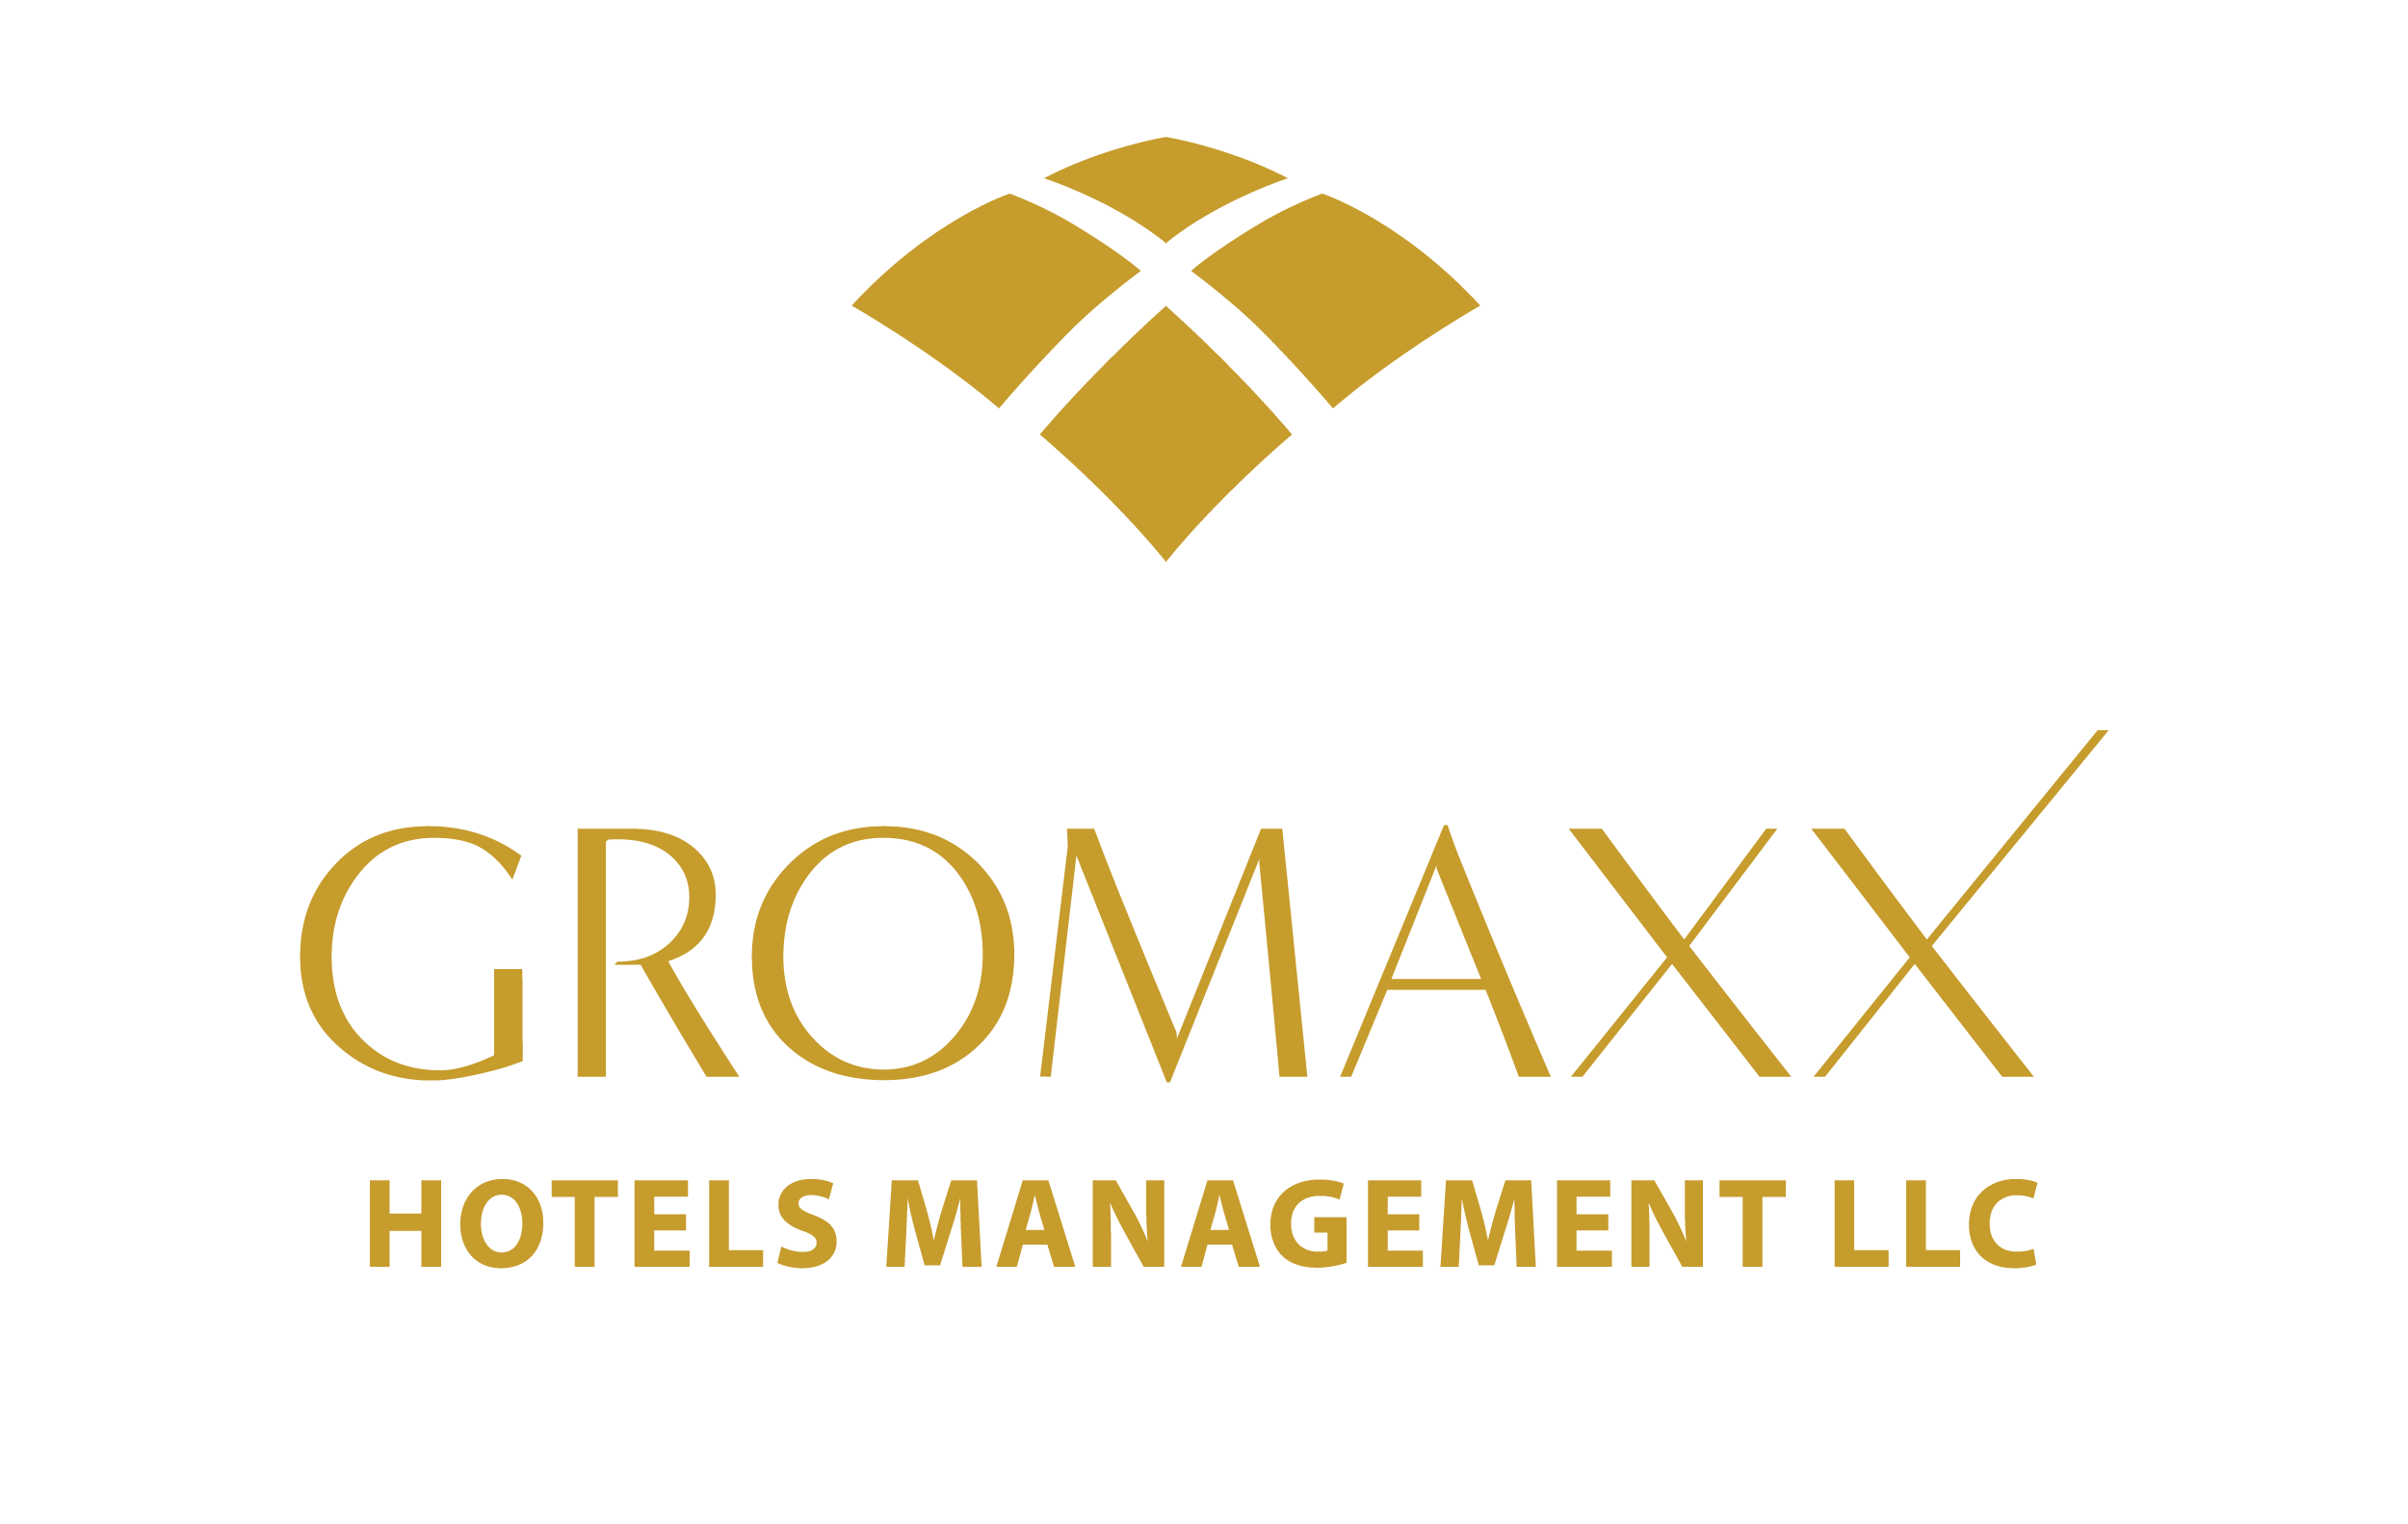 Gromaxx Hotels Management LLC